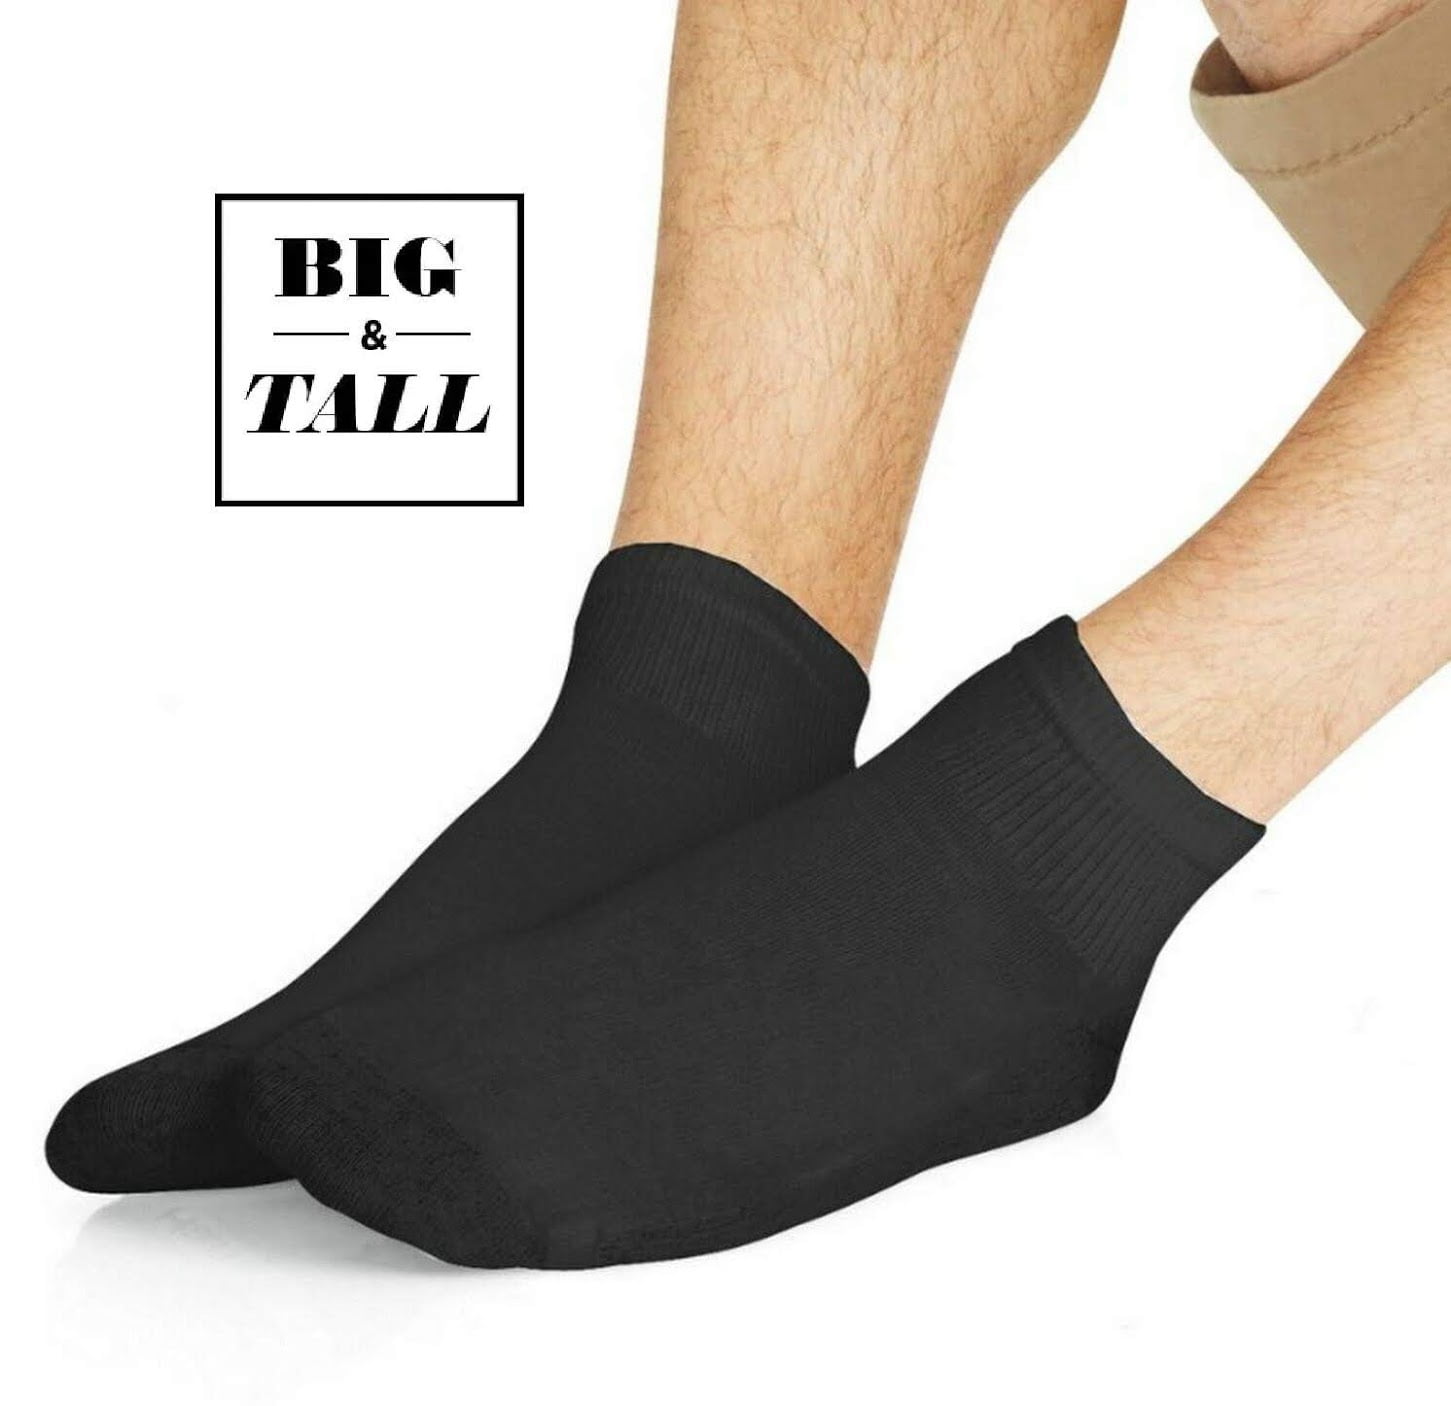 10-13/Shoe Size 6-12 Black Hanes Men'S 12 Pack Freshiq Crew Socks